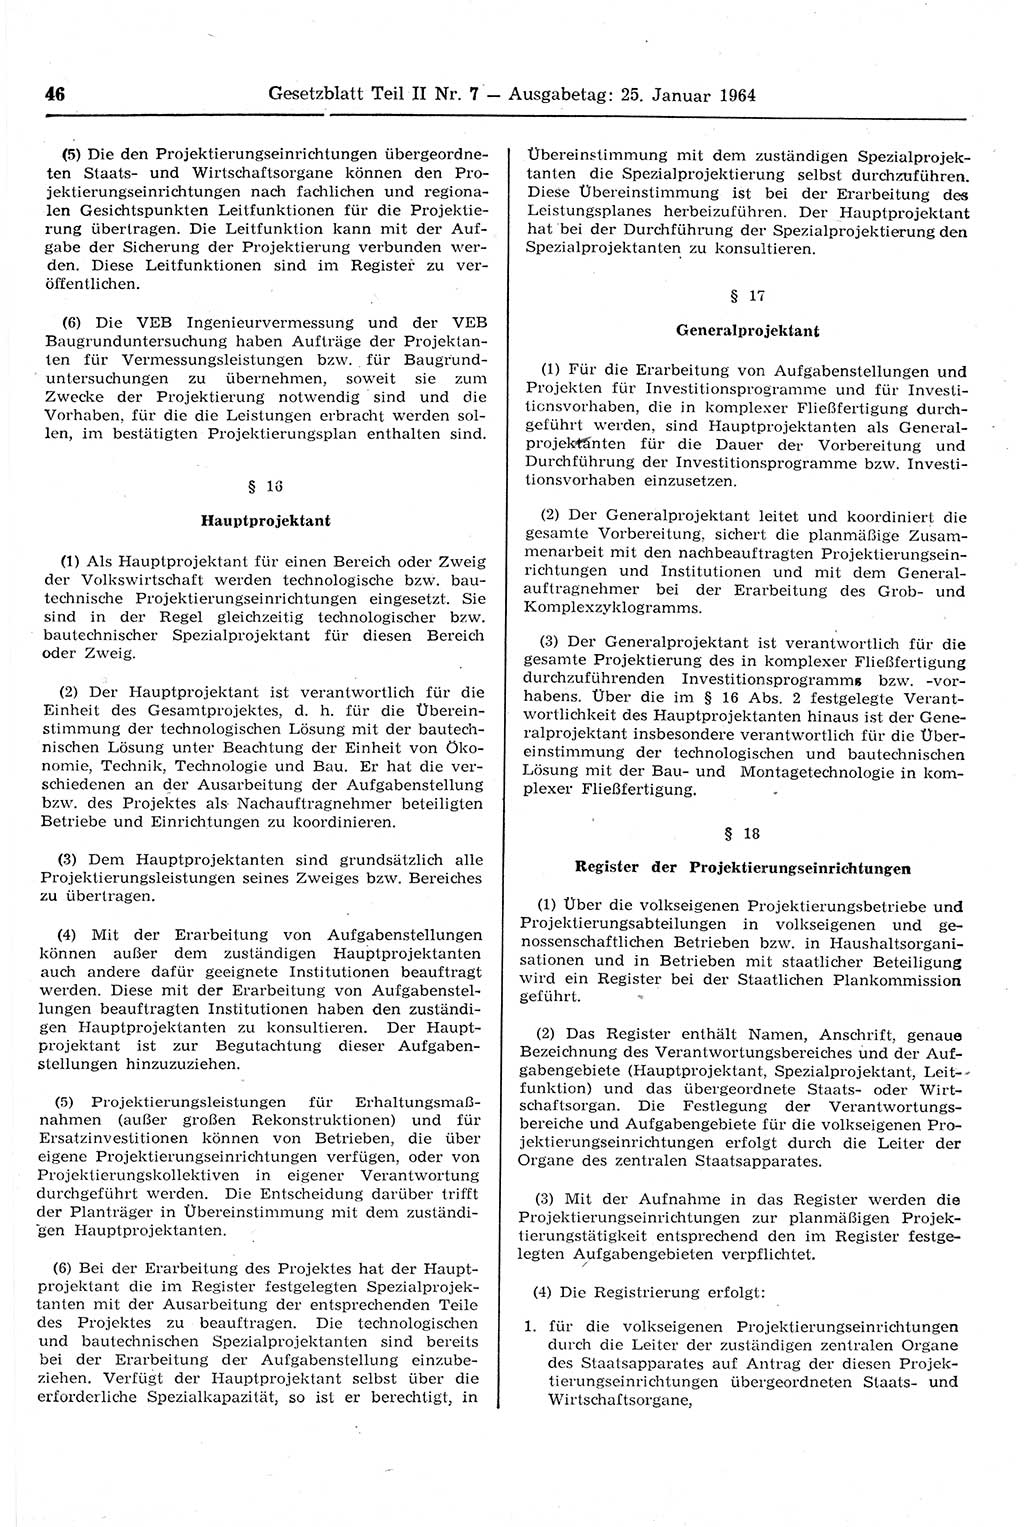 Gesetzblatt (GBl.) der Deutschen Demokratischen Republik (DDR) Teil ⅠⅠ 1964, Seite 46 (GBl. DDR ⅠⅠ 1964, S. 46)